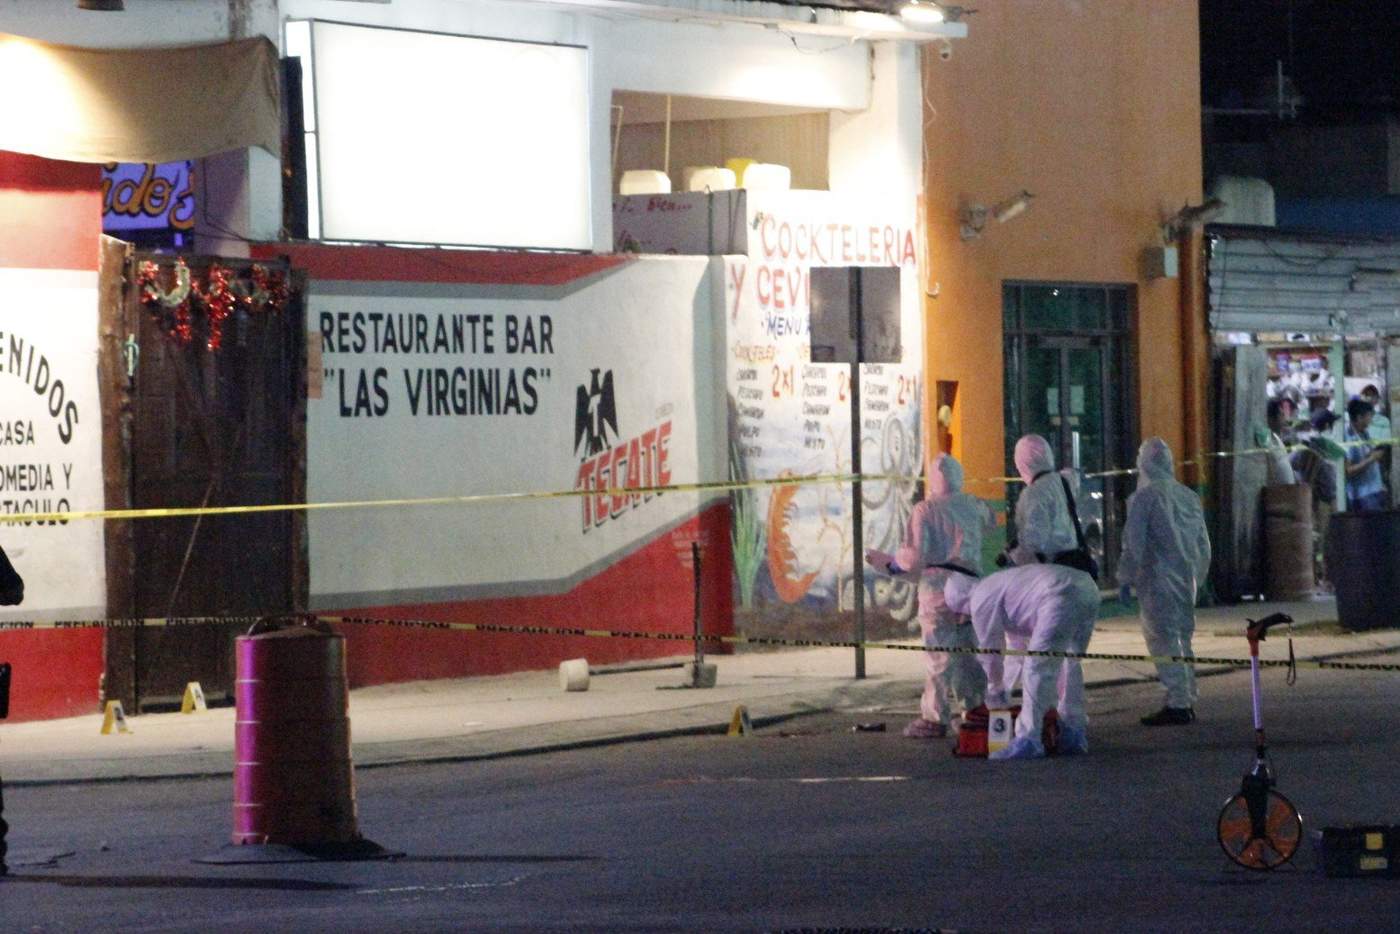 La mañana de hoy 8 de enero de 2018 la Fiscalía General del Estado de Quintana Roo informó de la detención de 'varias' personas, vinculadas al ataque al bar en Playa del Carmen donde murieron siete personas. (EFE)